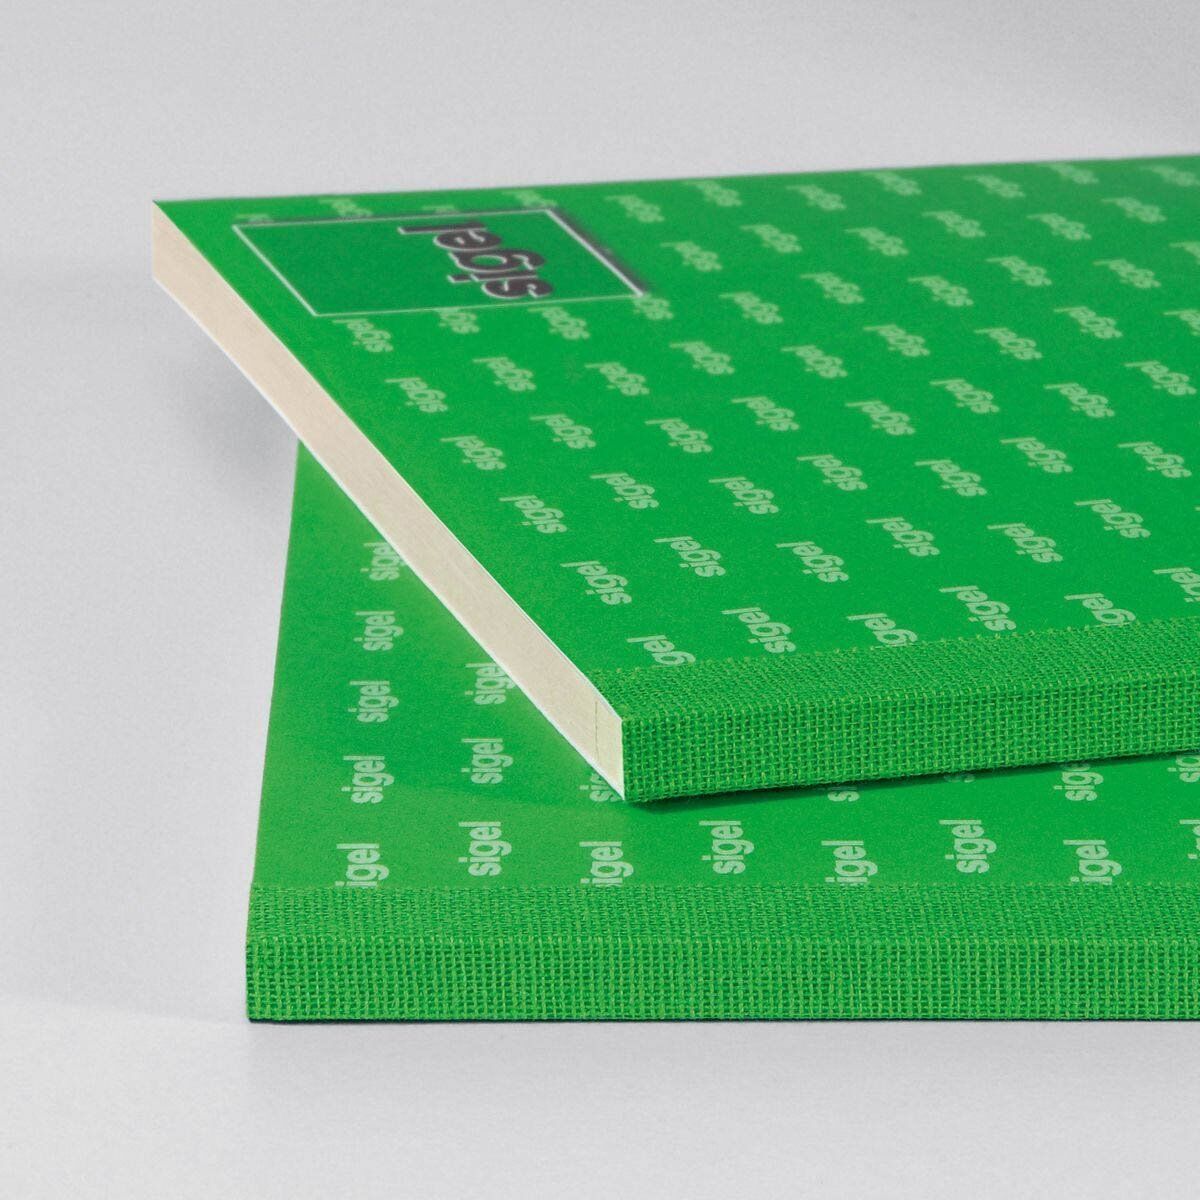 EDV-Kassenbuch - A4, 1. und 2. Blatt bedruckt, SD, MP, 2 x 40 Blatt